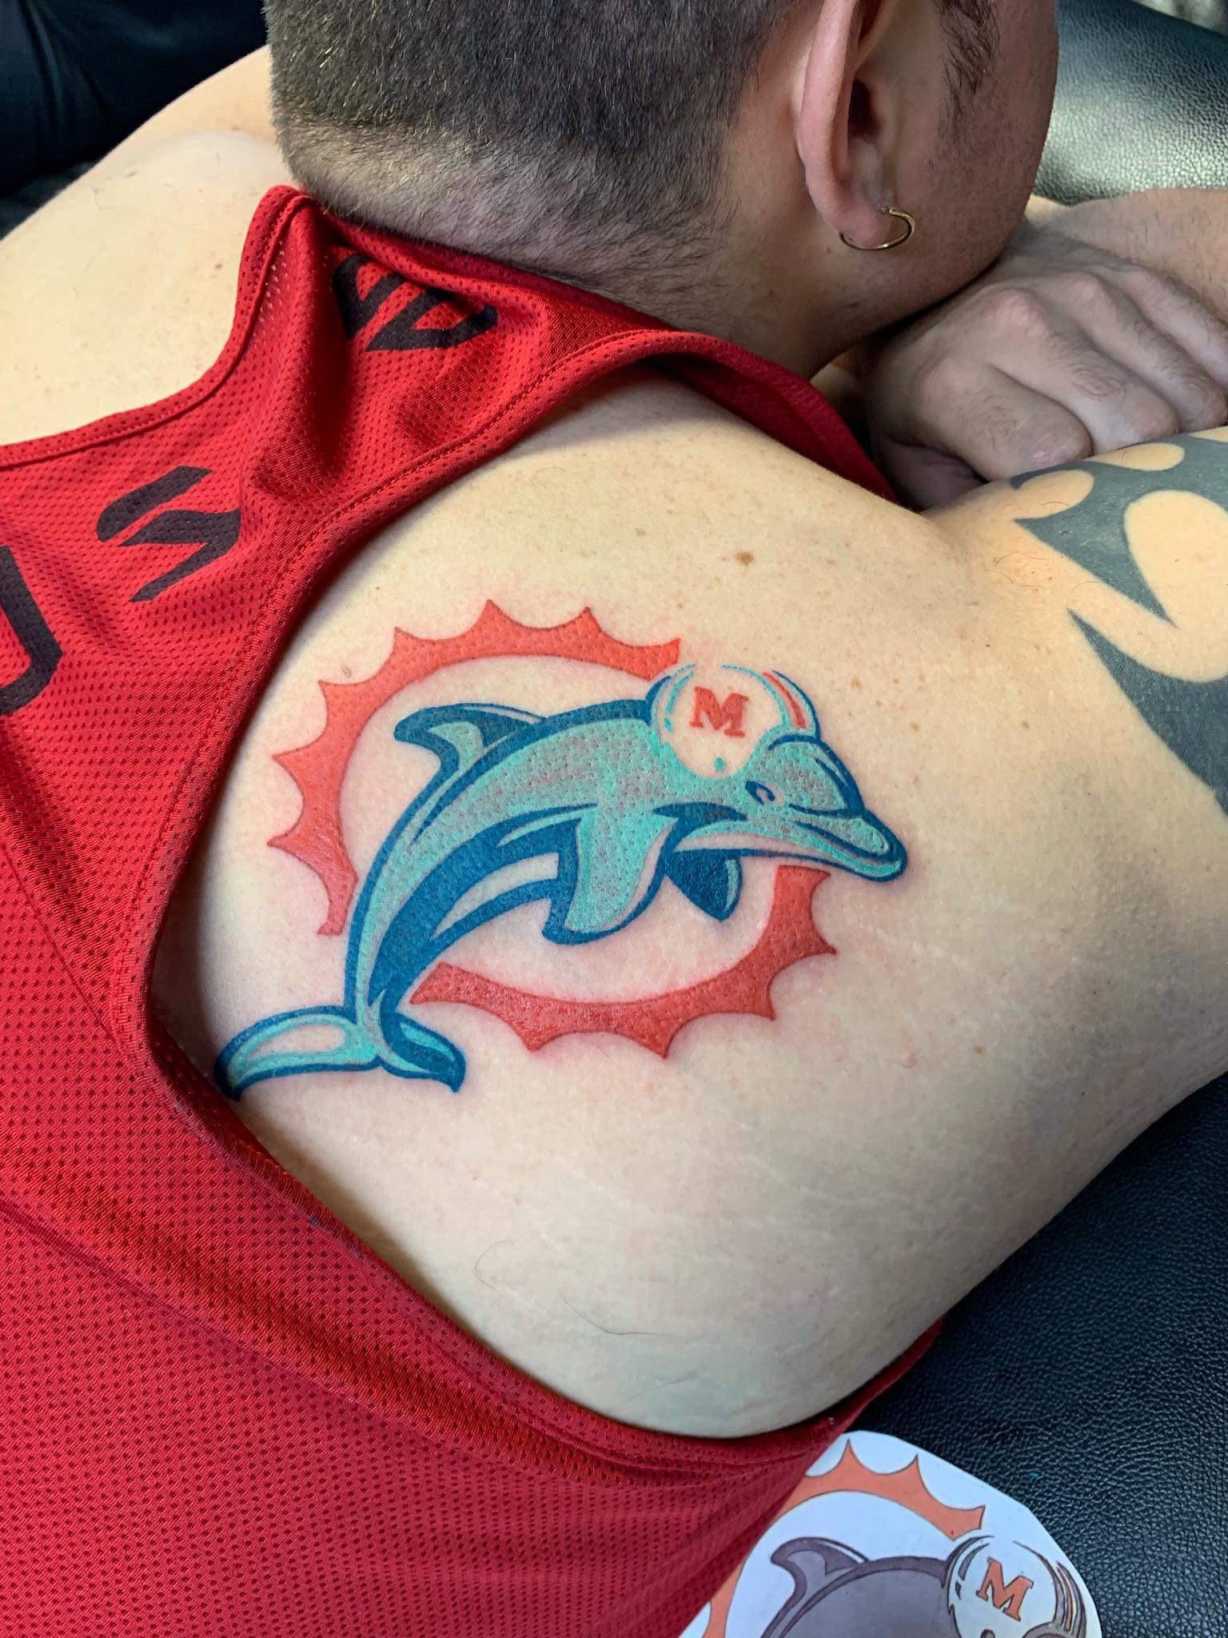 Got myself a new tattoo : r/miamidolphins